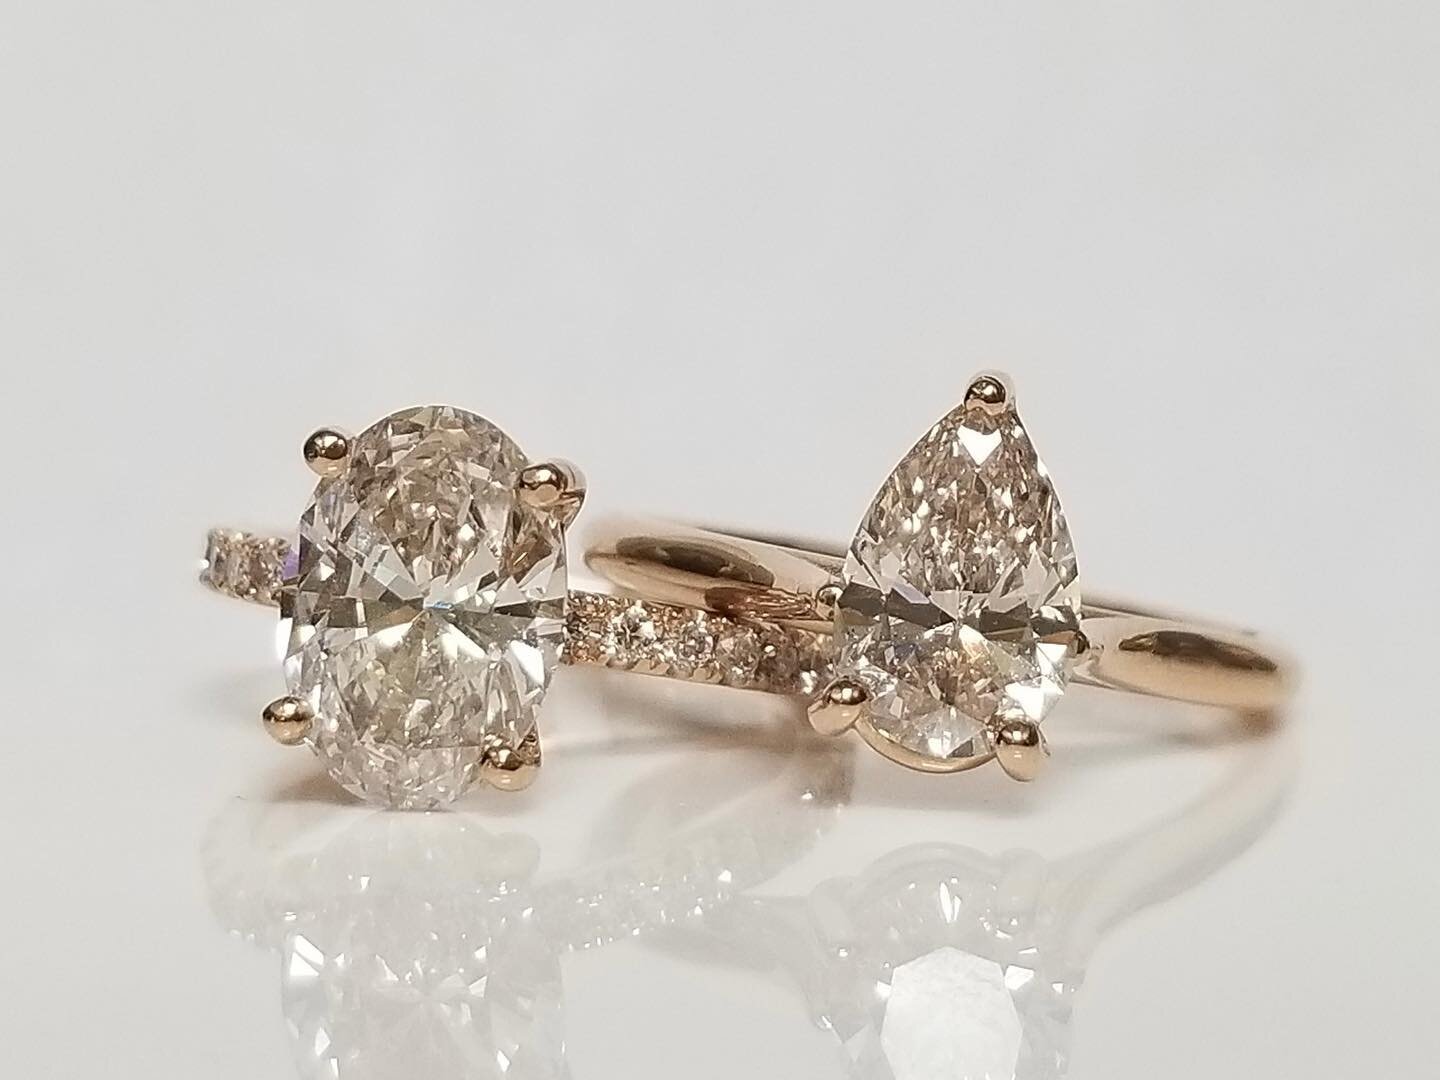 Mined diamonds? Lab grown? Can you guess?💍
-
-
-
#labgrowndiamonds #mineddiamonds #engagementring #rosegold #theknot